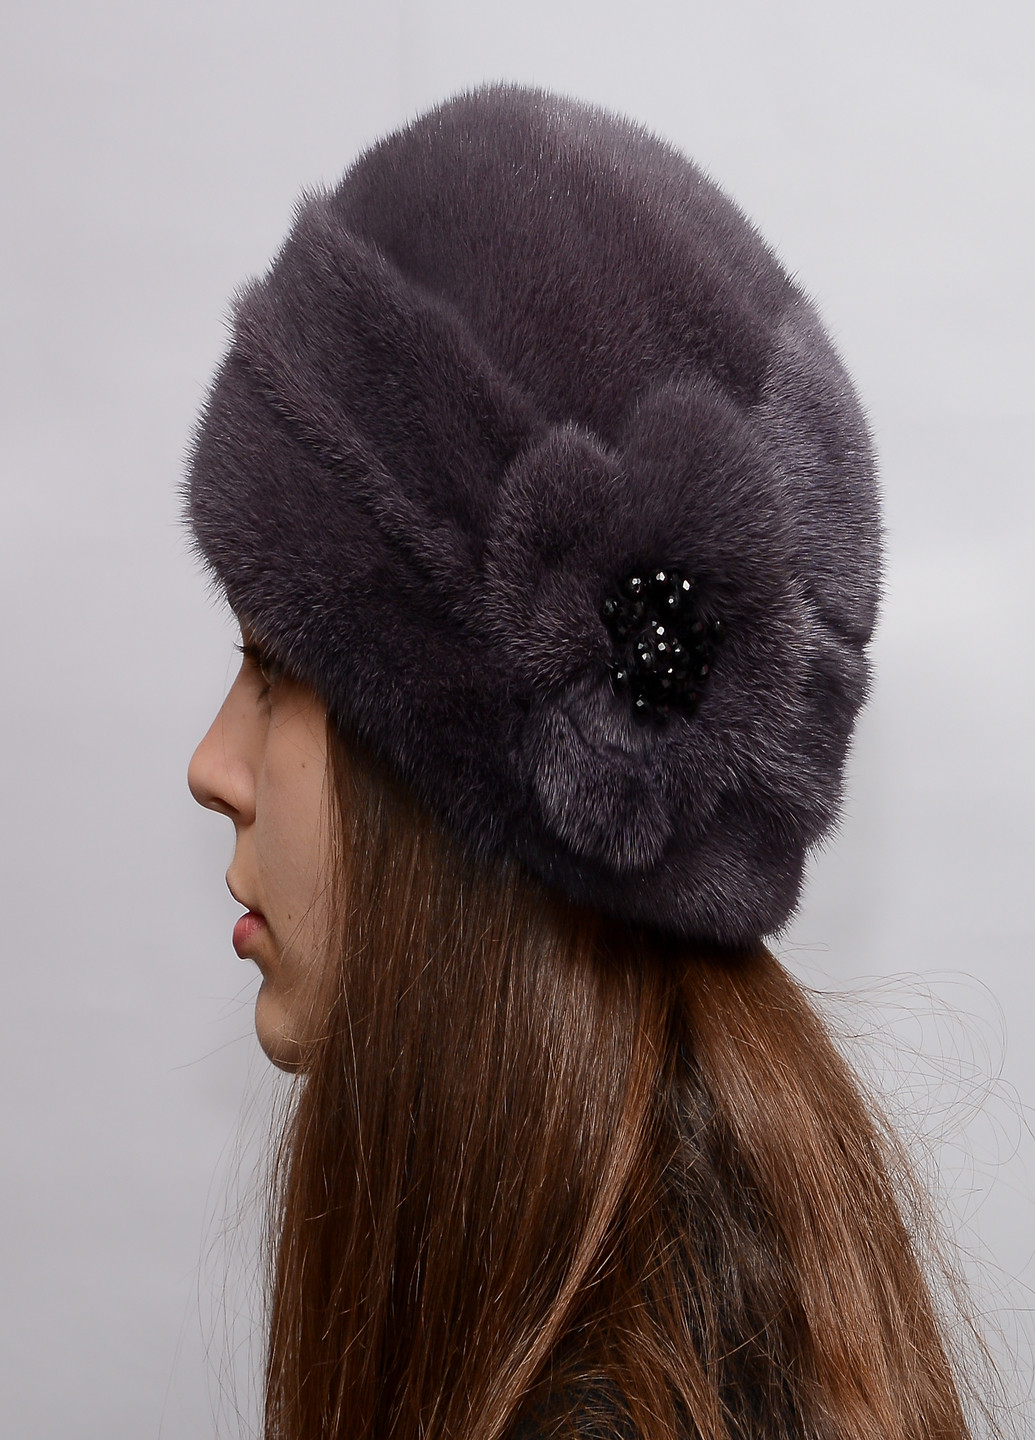 Женская зимняя норковая шапка Меховой Стиль шарик бусы (211665190)